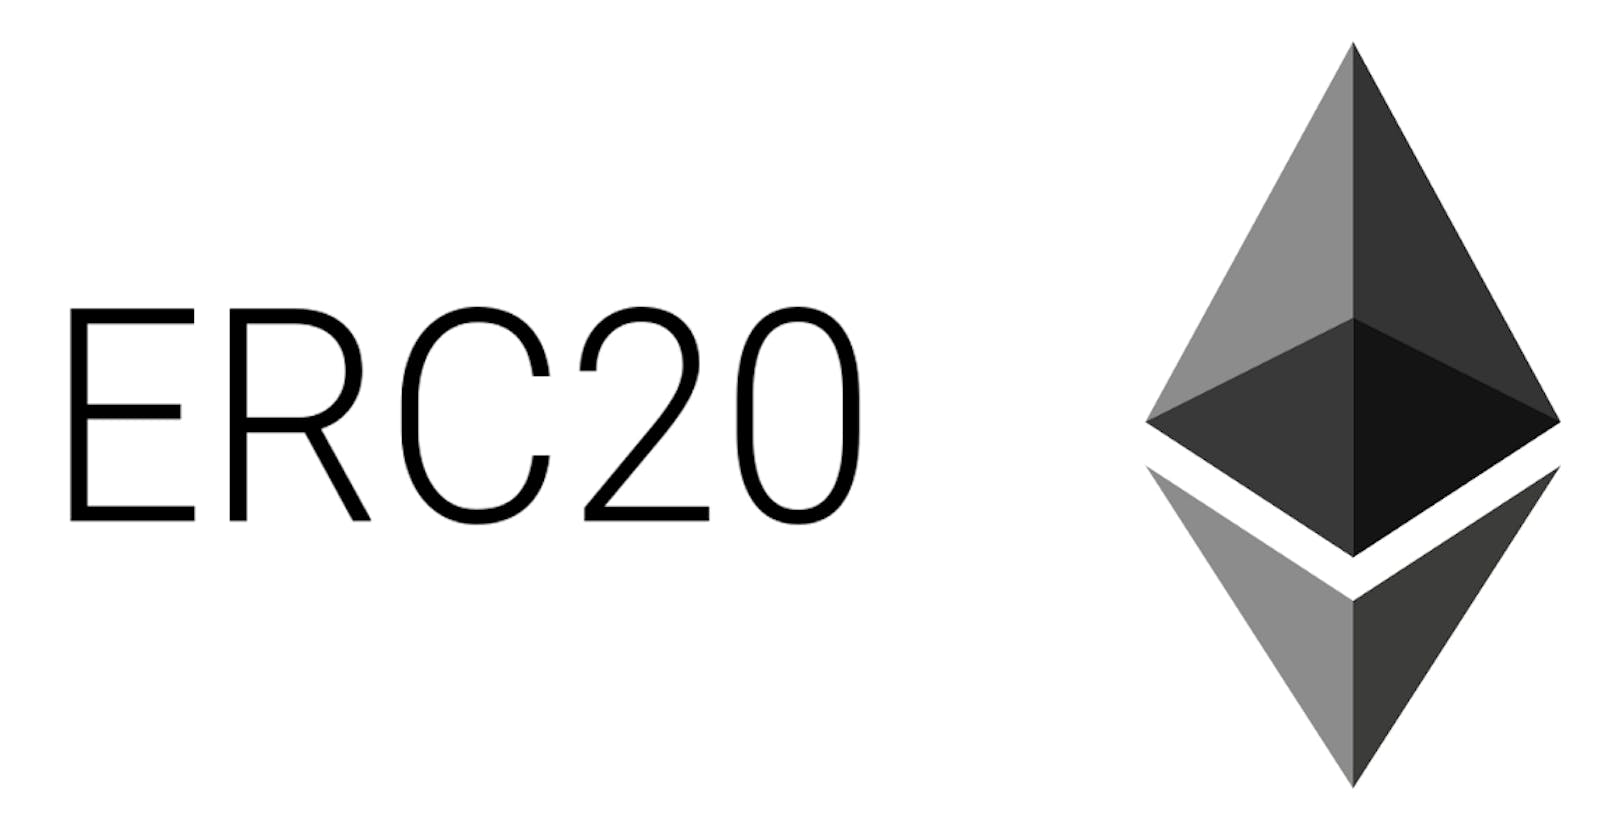 How to mint ERC20 tokens using Open-Zeppelin